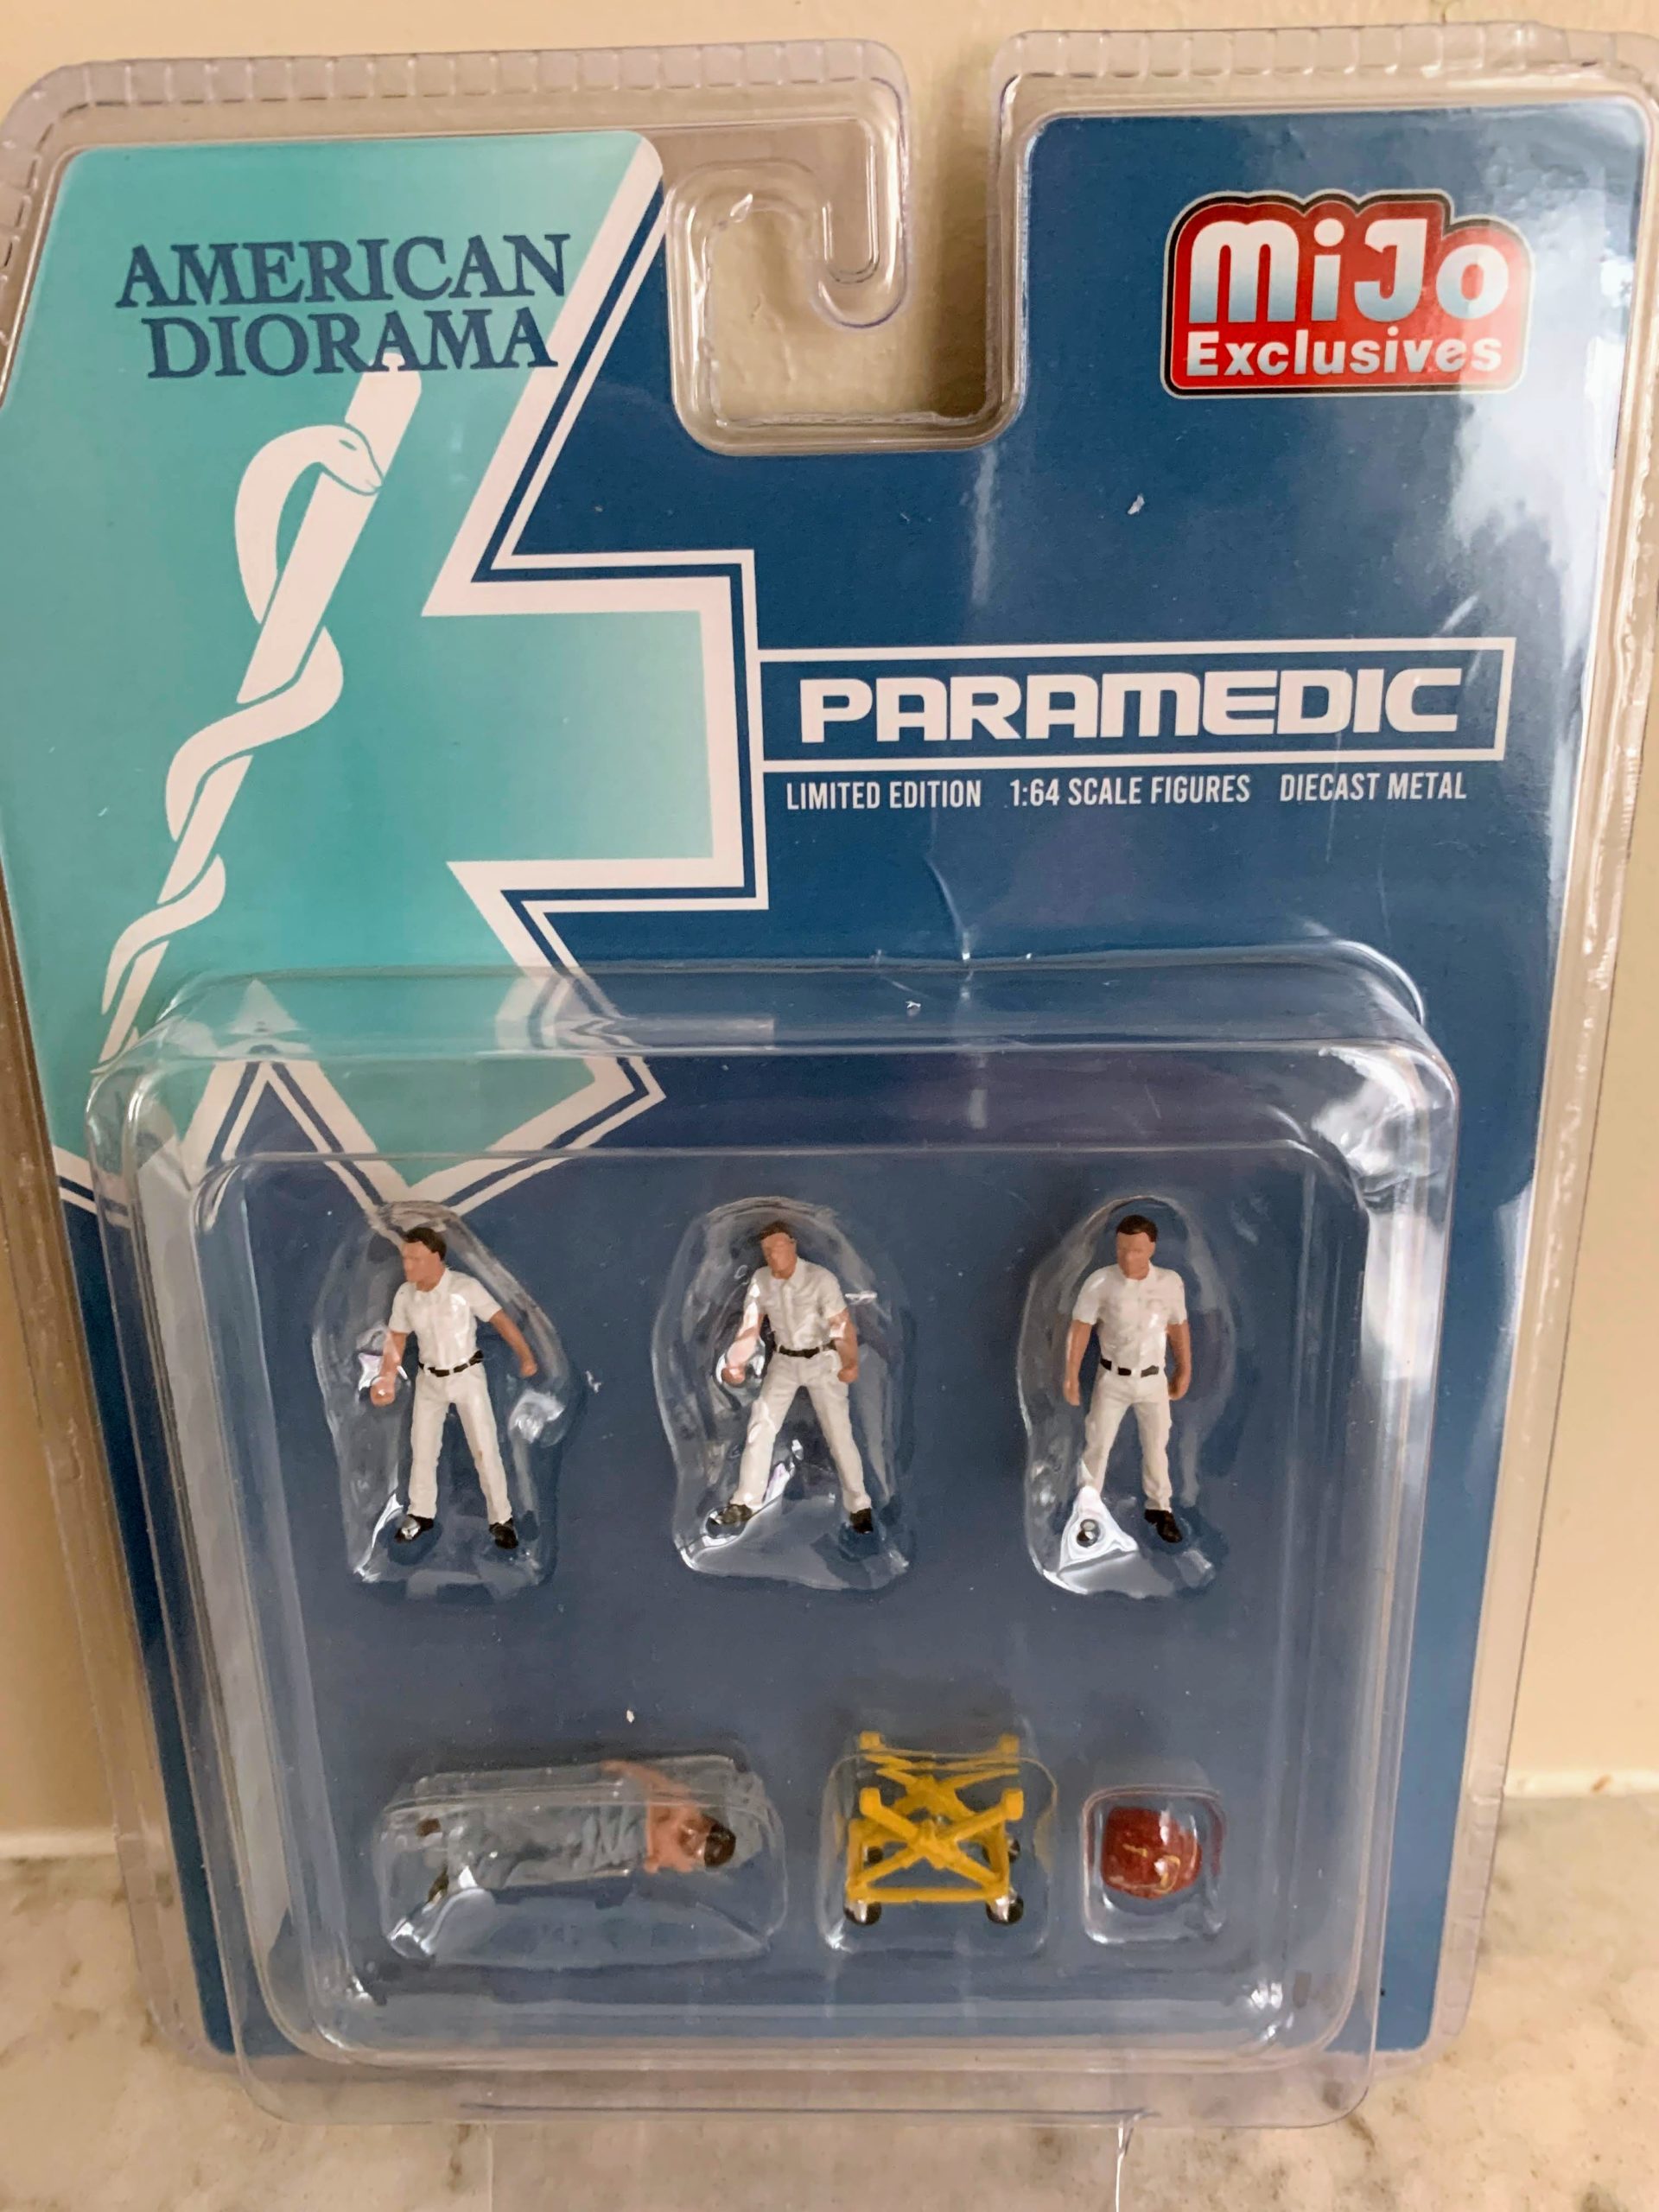 Diorama Figure Set - Paramedic 1:64 scale 